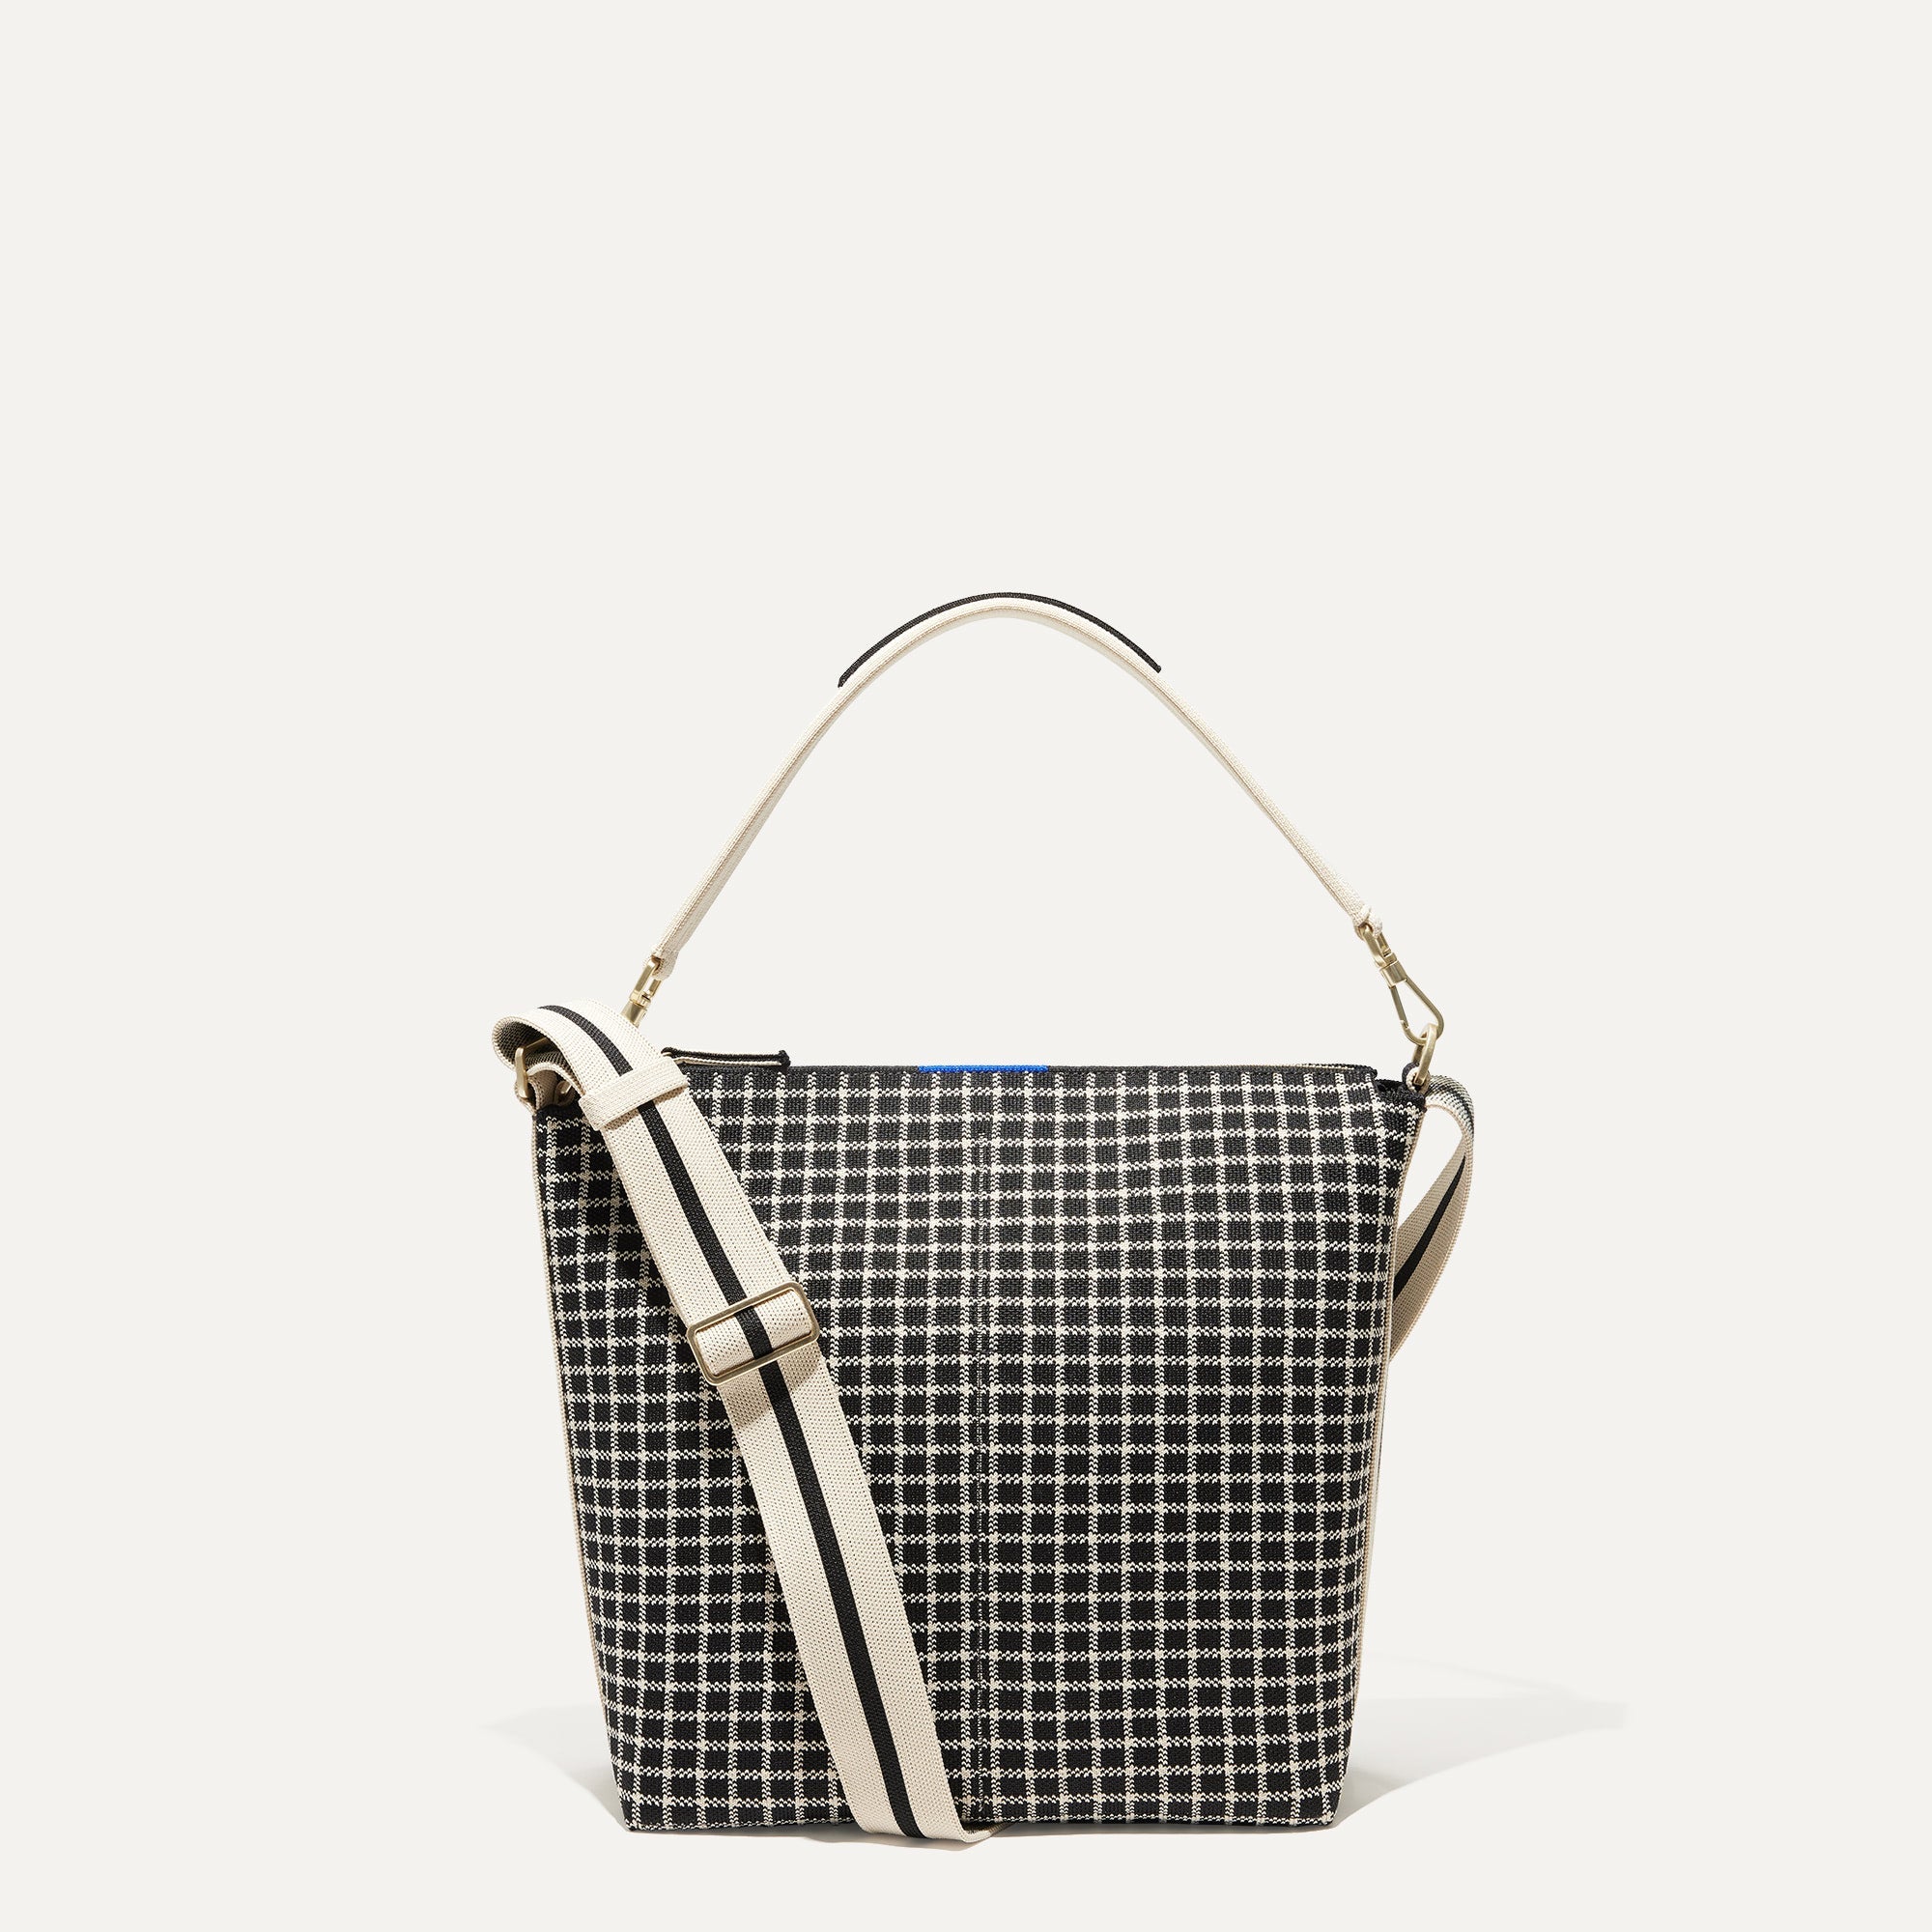 Small handbag/Shoulder bag - Black/houndstooth-patterned - Ladies